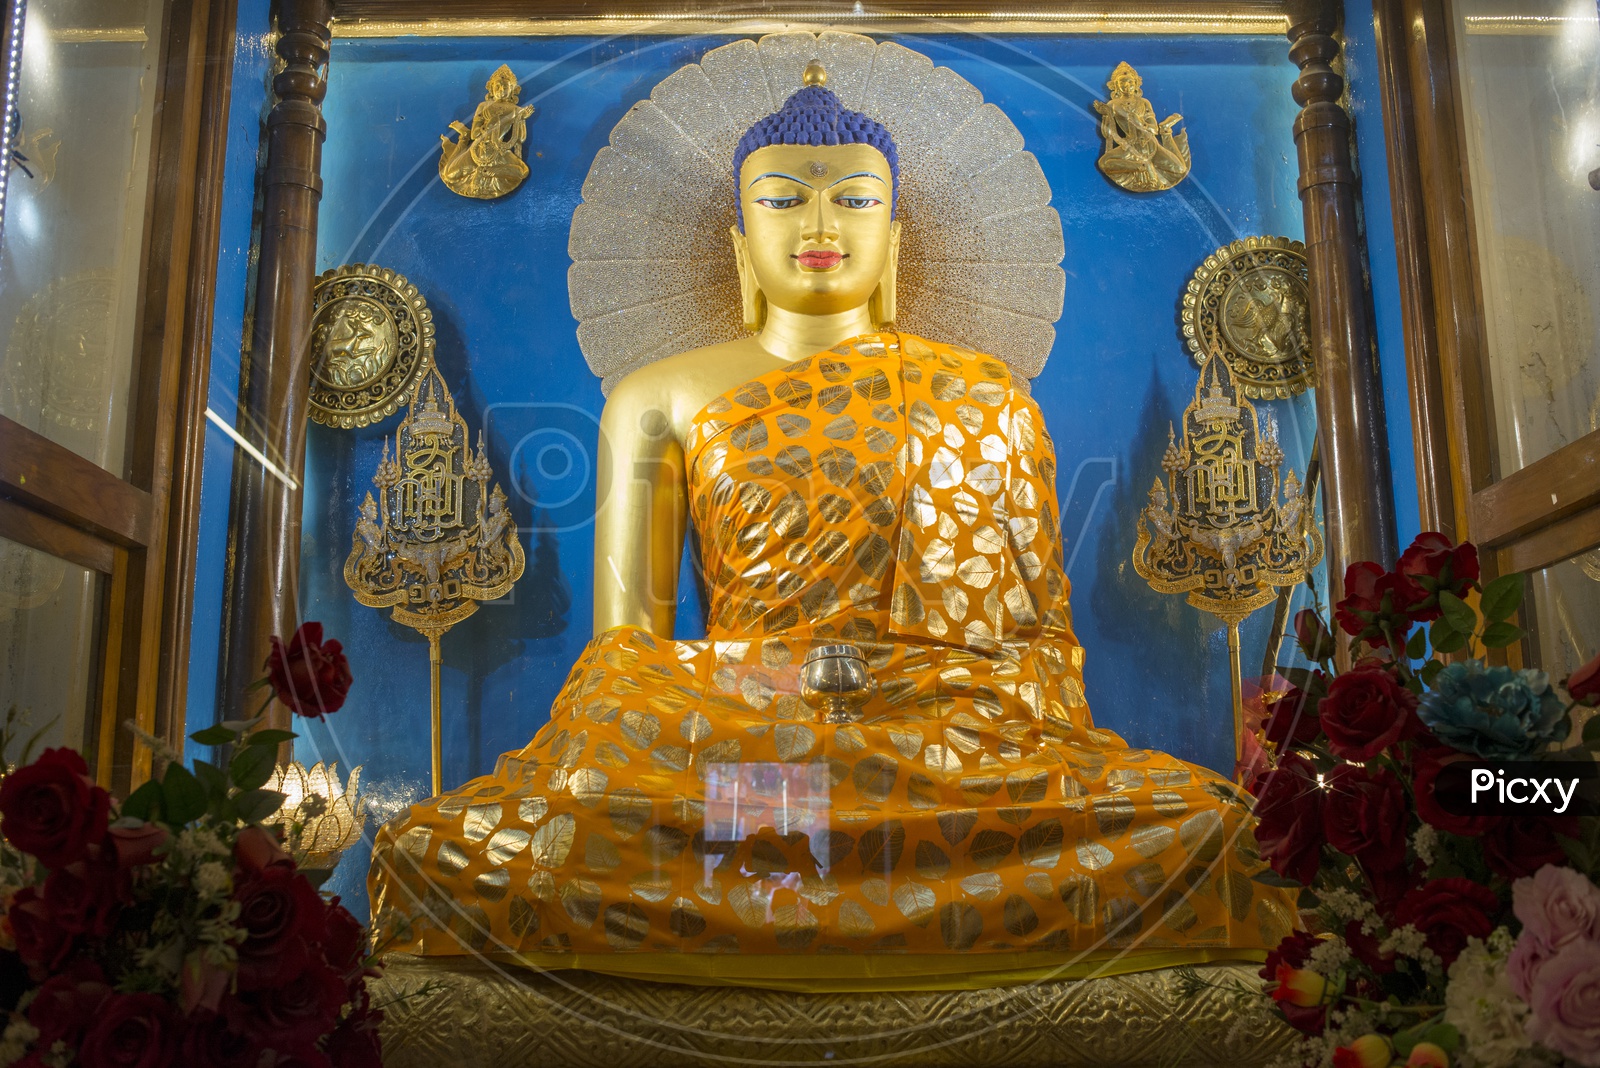 Mahabodhi Temple, Bodh Gaya